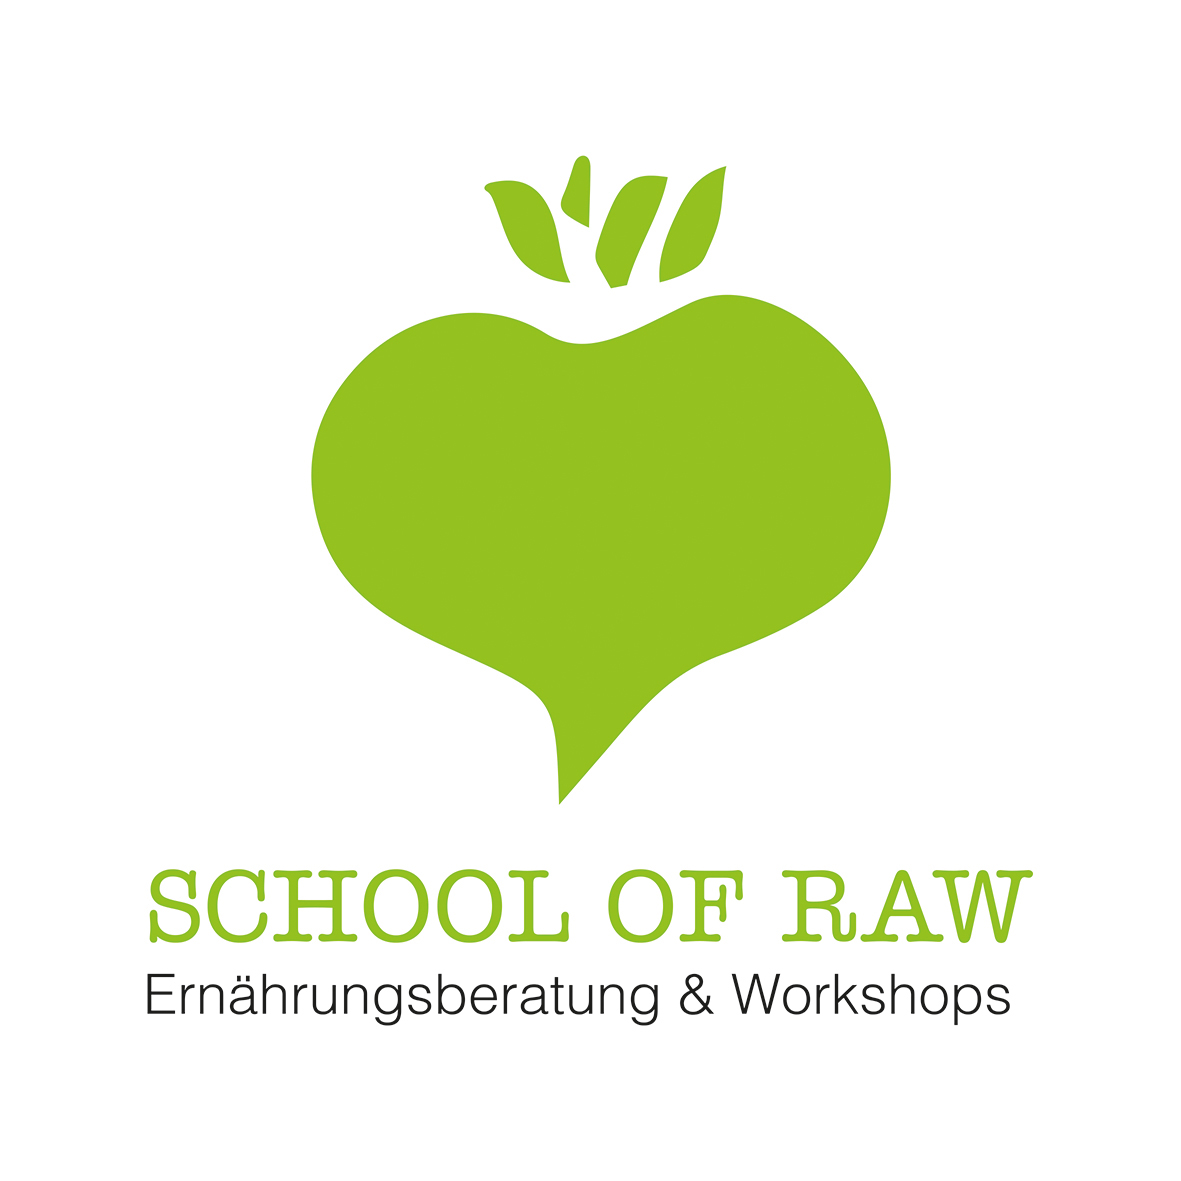 Eröffnung der School Of Raw - erste Workshops stehen fest! 19